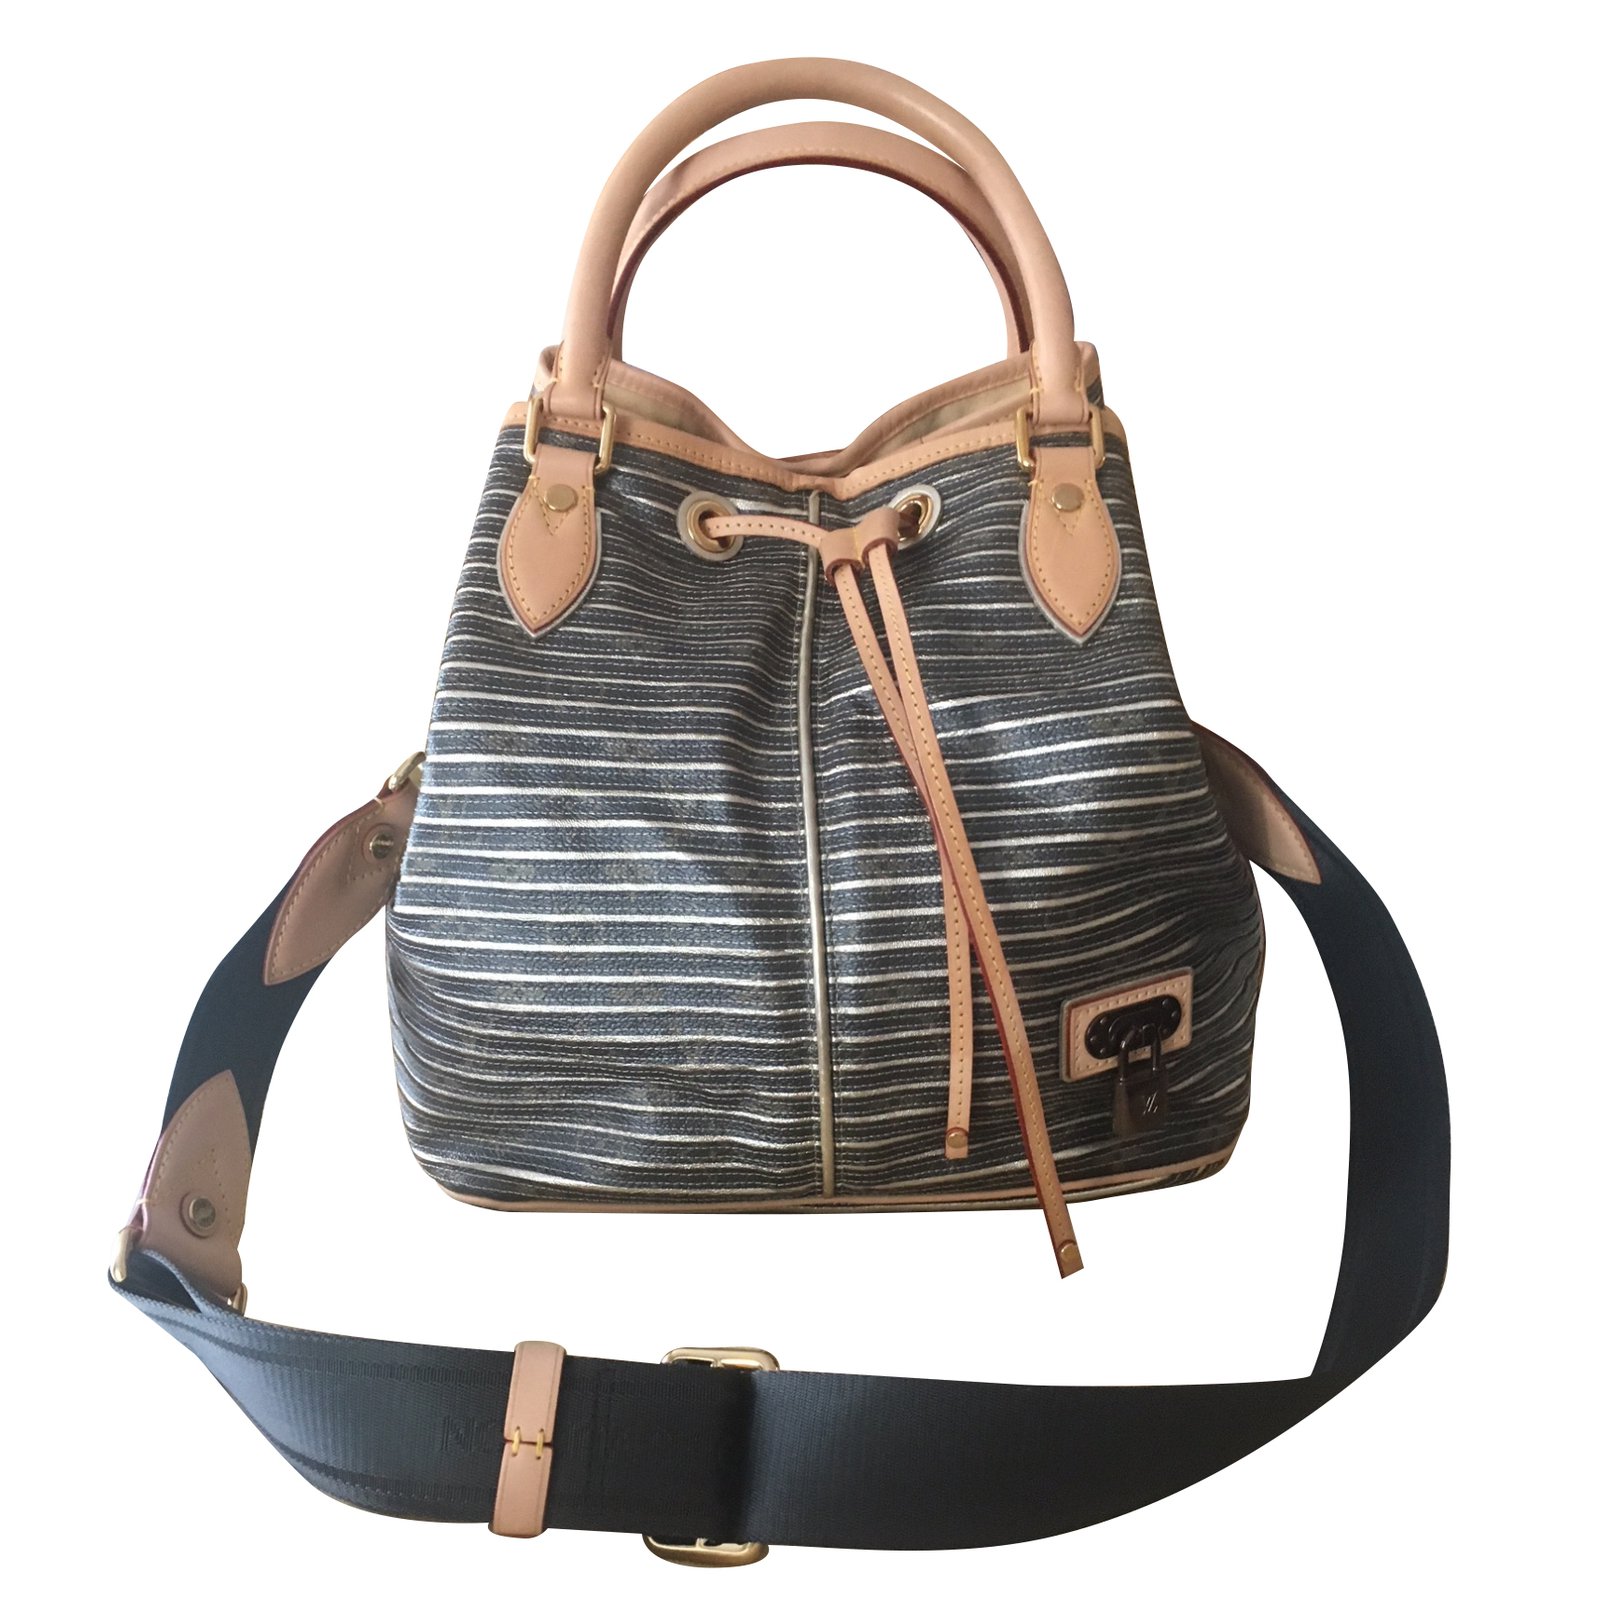 Louis Vuitton Neo Shoulder Bag Limited Edition Monogram Eden